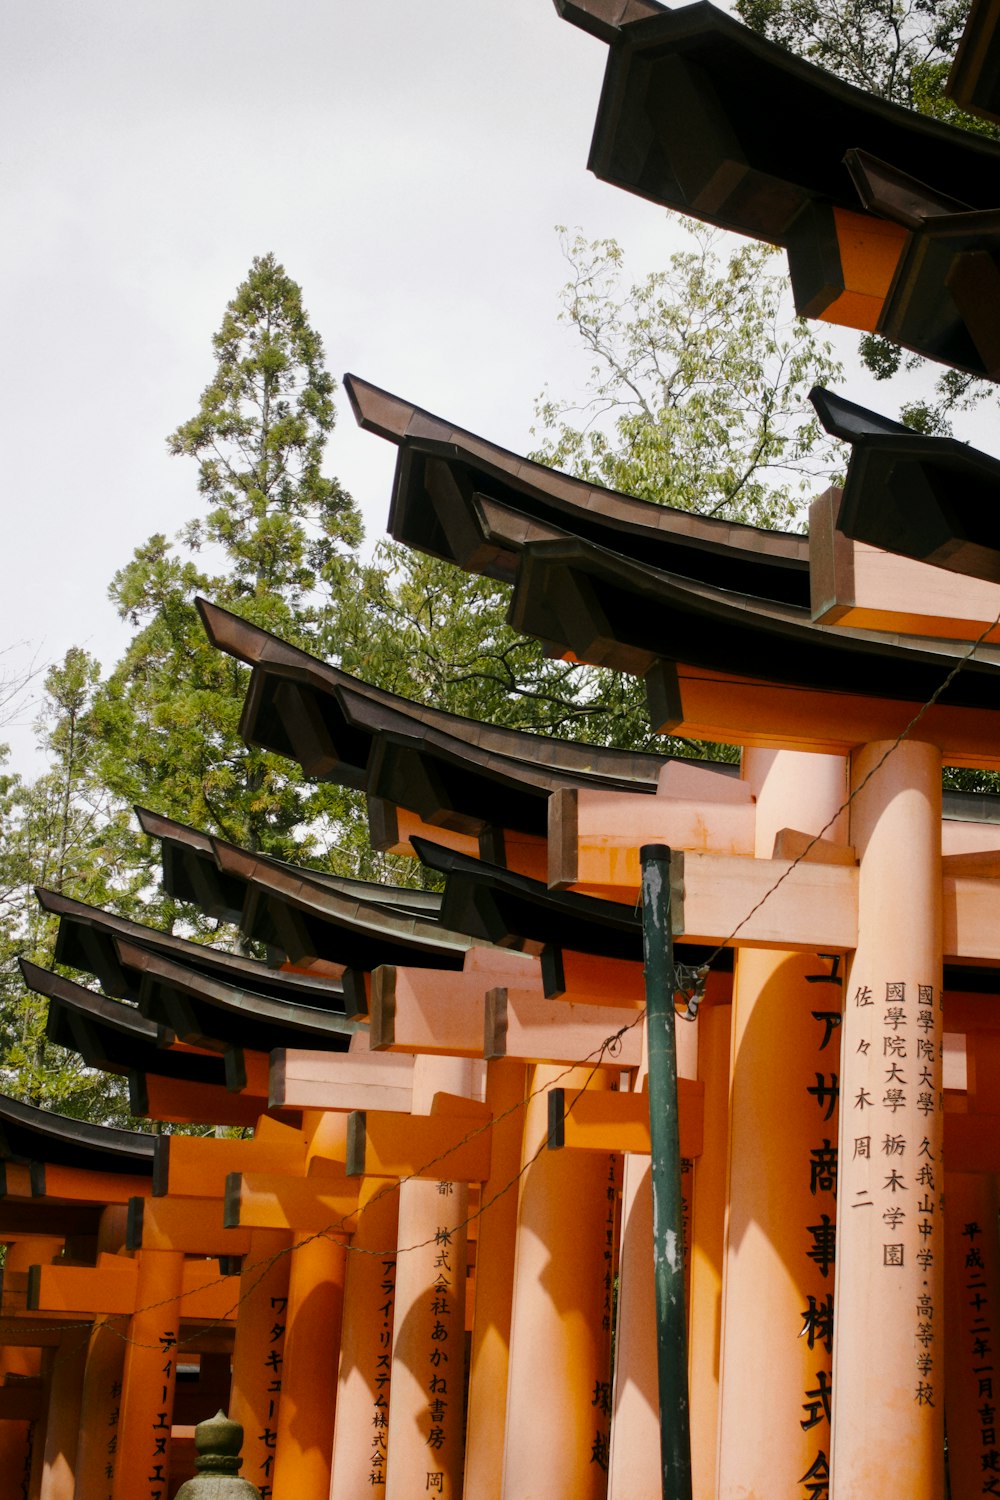 アジアの文字が書かれたオレンジ色の柱の列